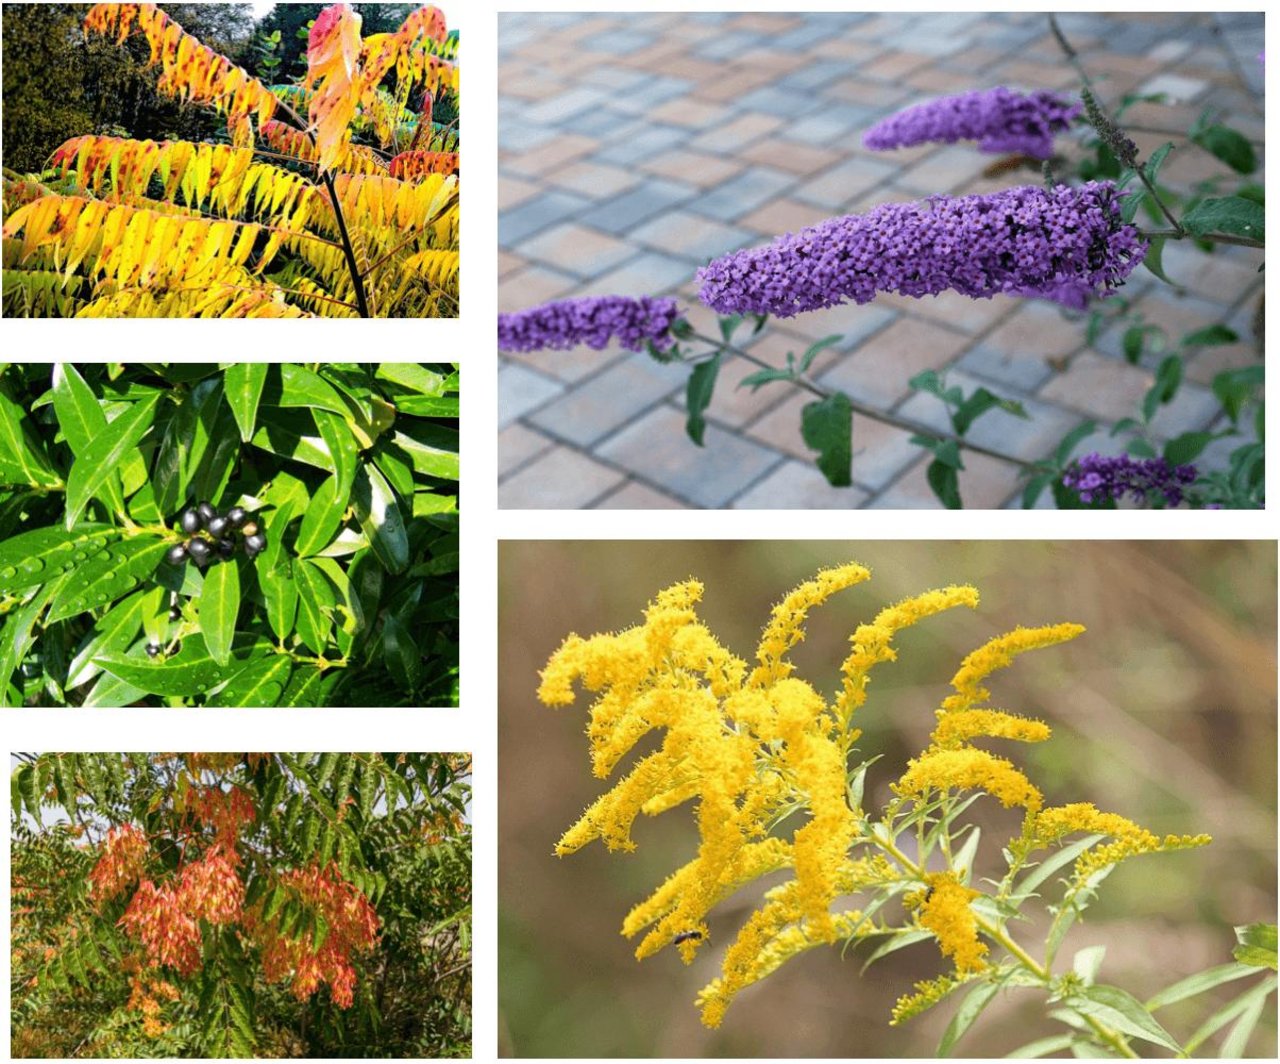 Alle diese Pflanzen sehen zwar schön aus und haben praktische Eigenschaften. Weil sei invasiv sind, gehören sie trotzdem nicht in den Garten. (Bilder Pixabay)